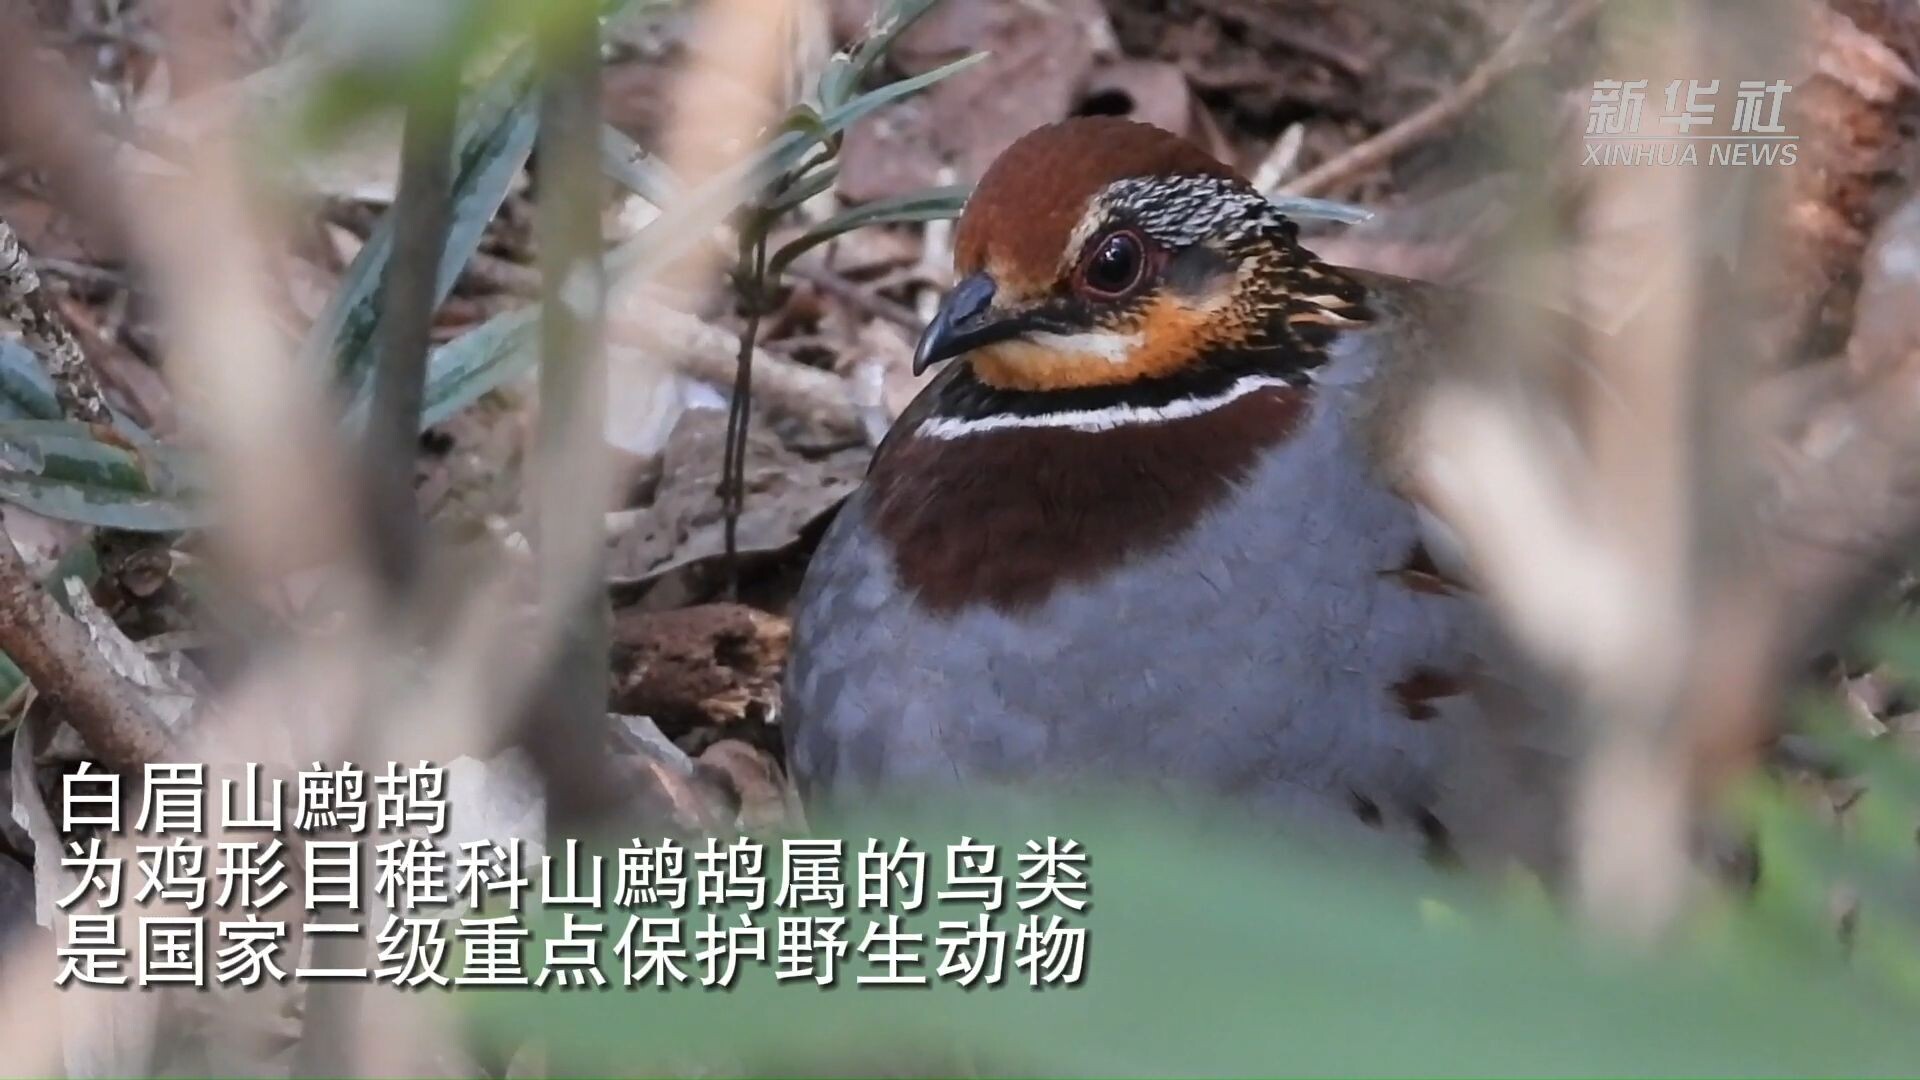 จีนจับภาพ 'นกกระทาใกล้สูญพันธุ์' ออกหาอาหารบนเขาต้าหมิง